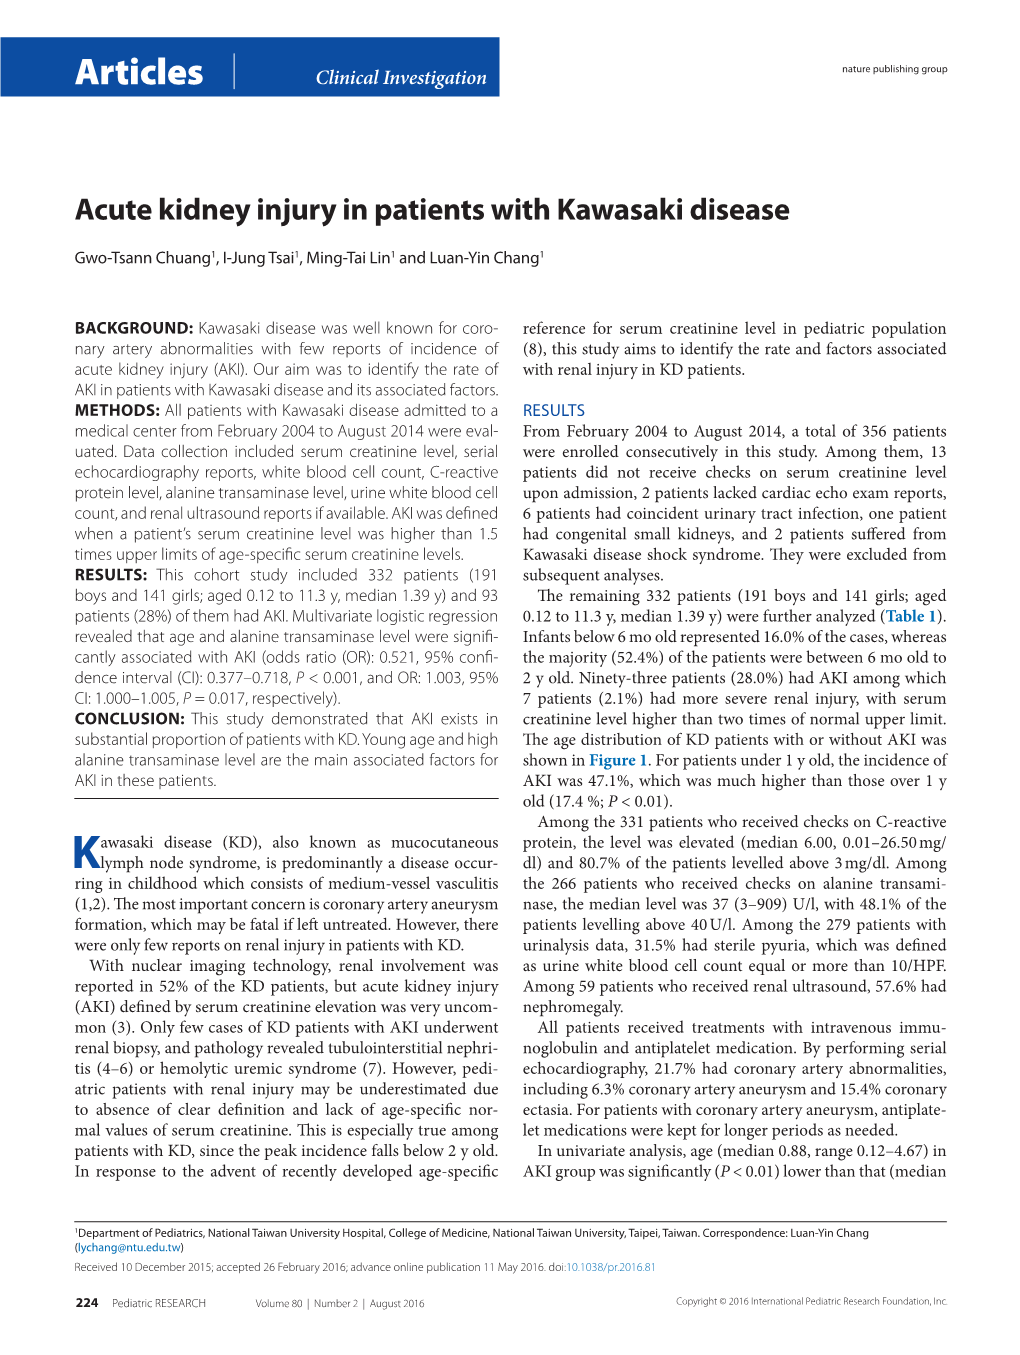 Acute Kidney Injury in Patients with Kawasaki Disease